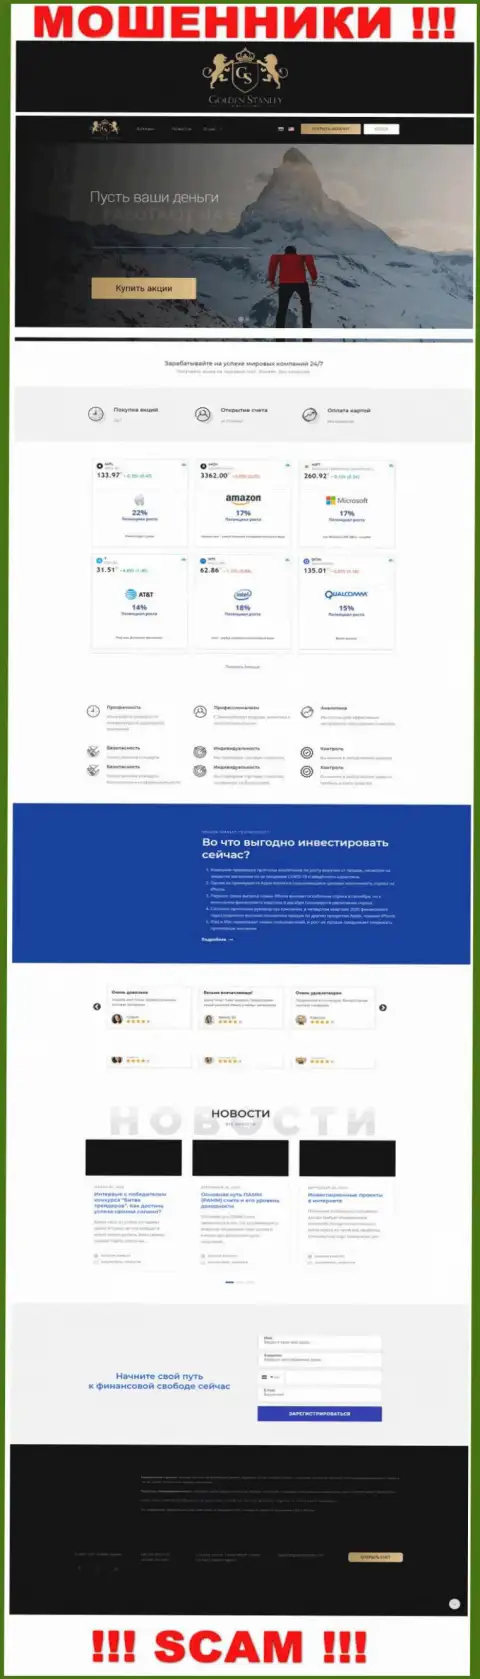 Официальный веб-ресурс Golden Stanley - это красивая страничка для привлечения потенциальных клиентов